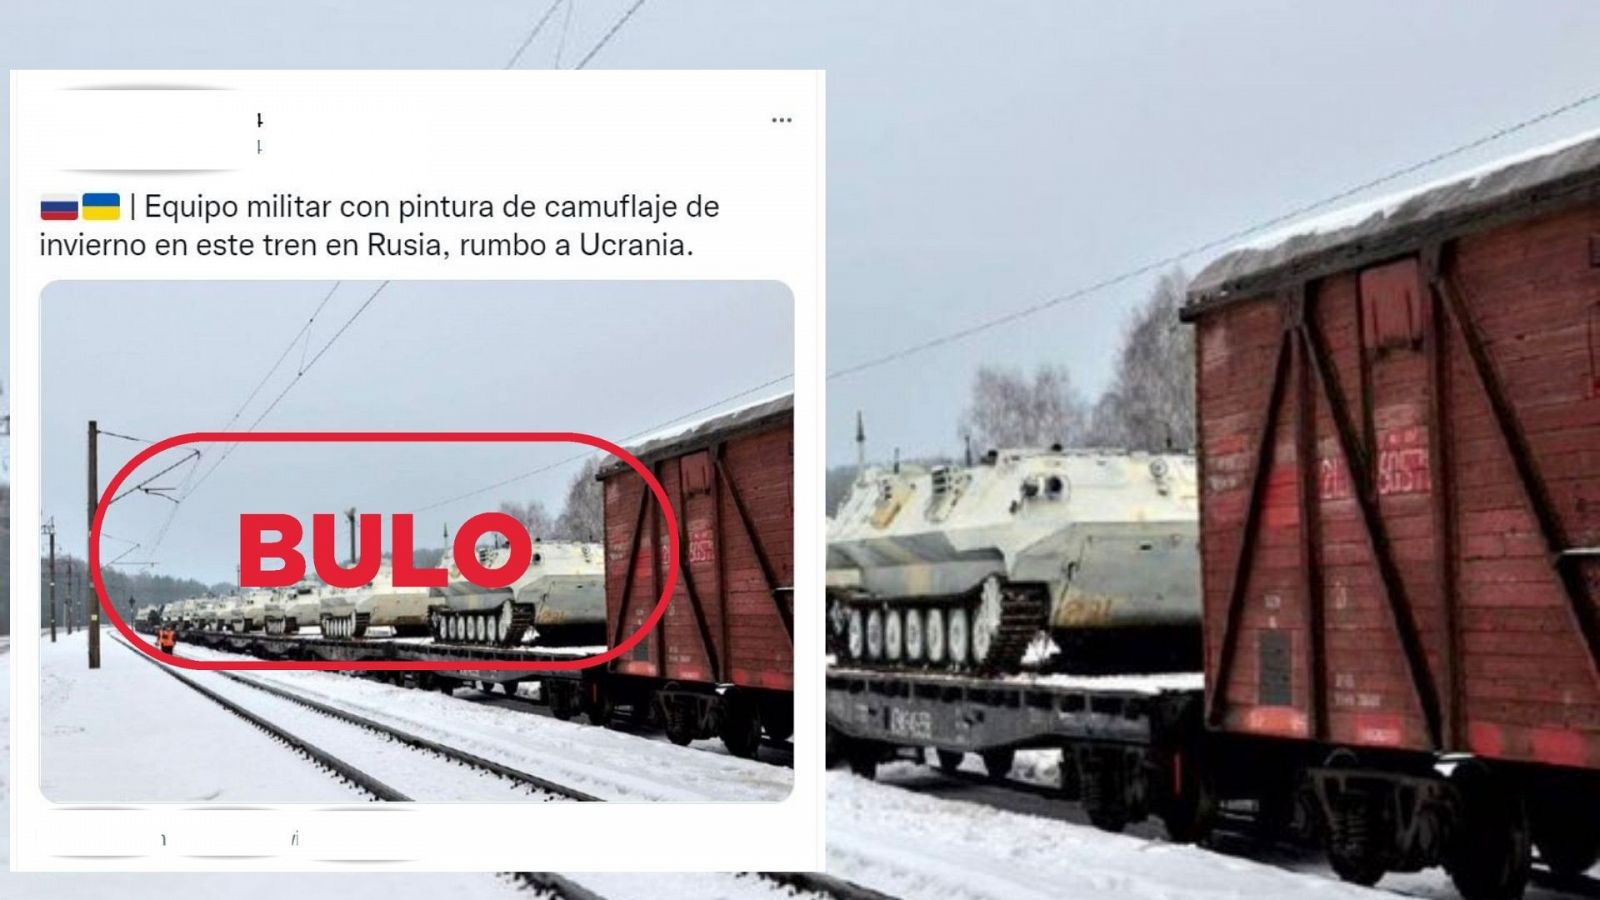 Mensaje de Twitter donde se muestra una imagen antigua sobre carros de combate sobre un tren, con el sello de bulo en rojo.